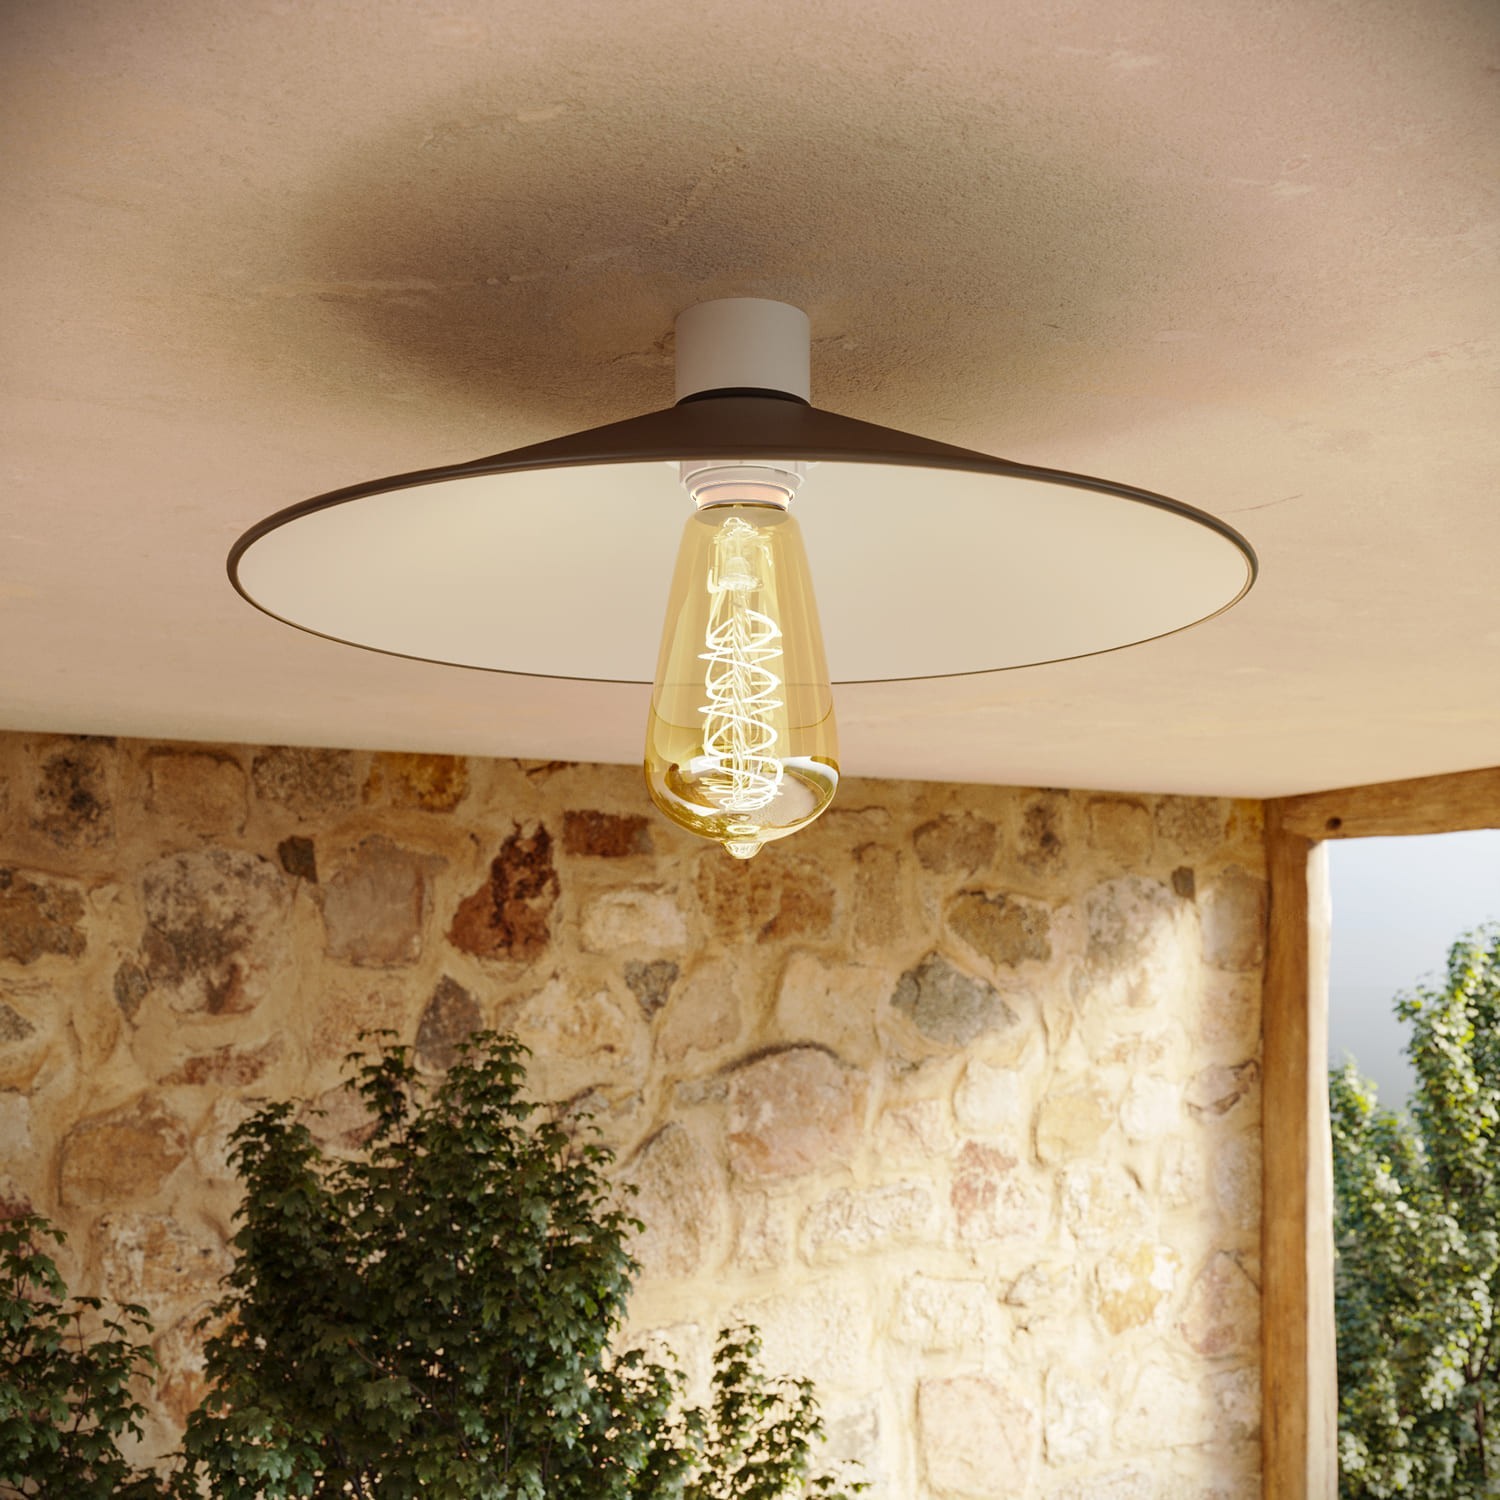 Ceiling lamp with Swing metal lampshade - IP44 Waterproof